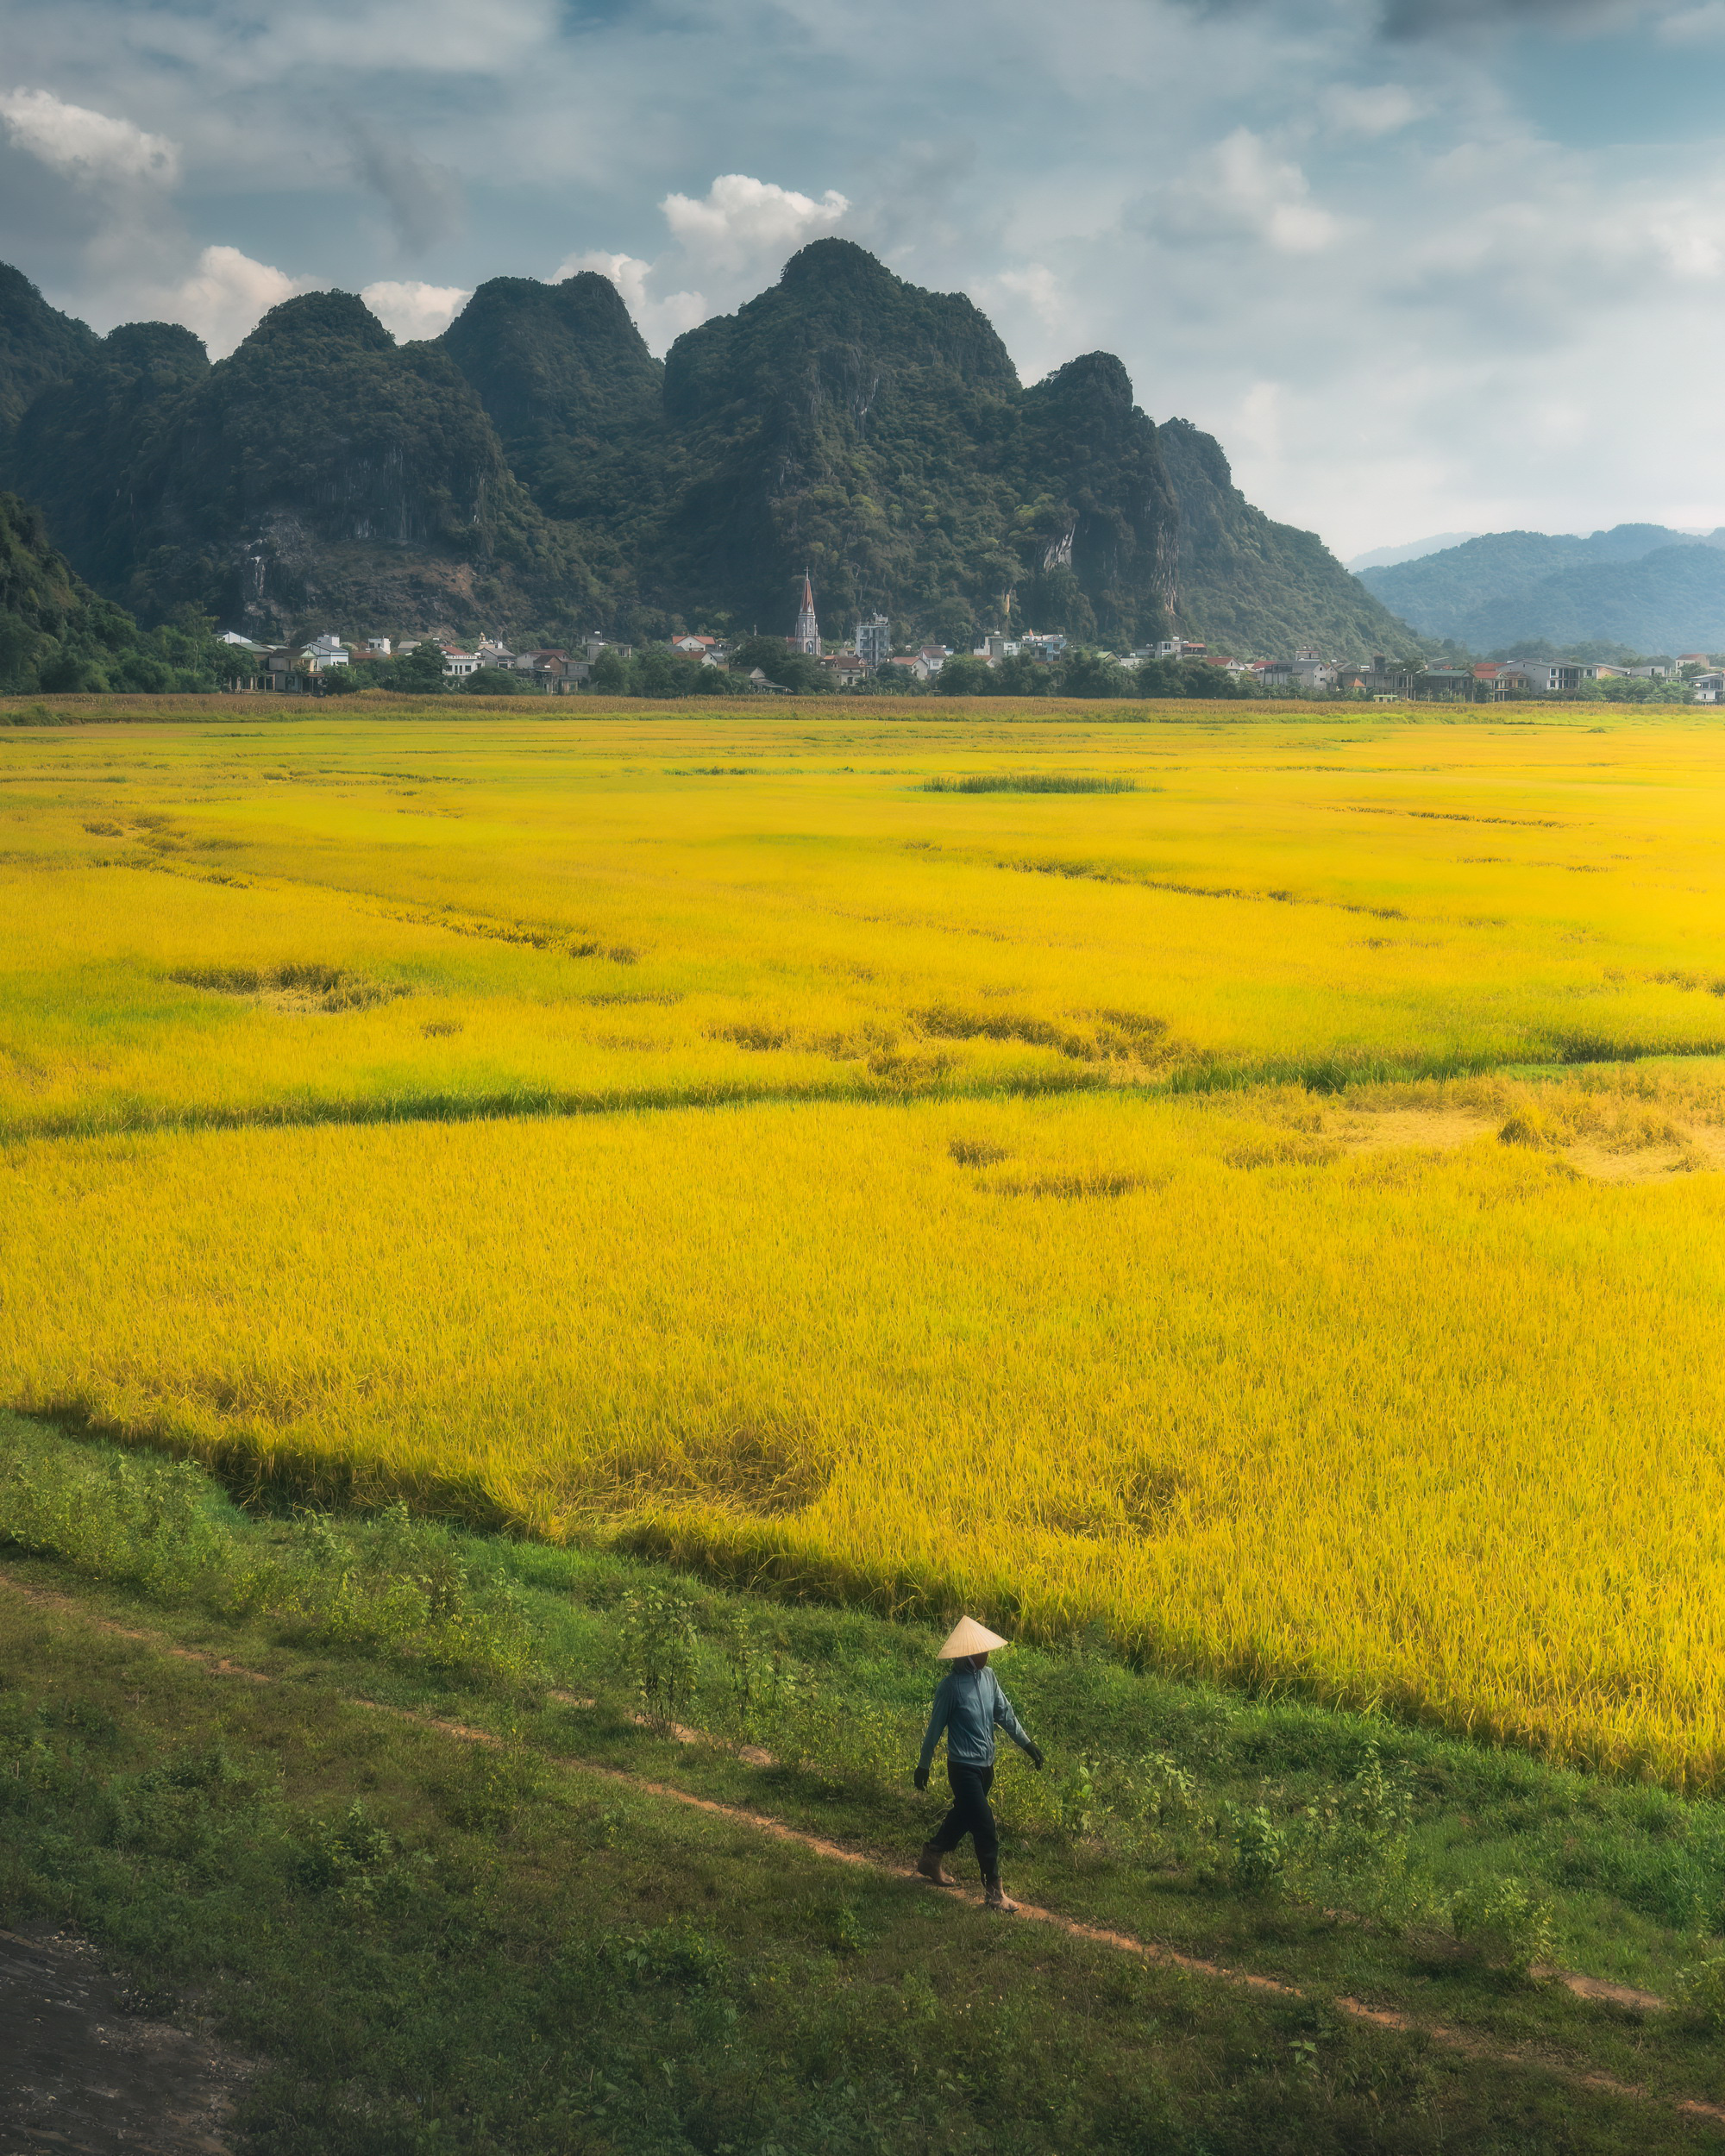 A farmer walks through ripe paddy fields in Ninh Binh Province in northern Vietnam.  Photo taken by Harry Bradley